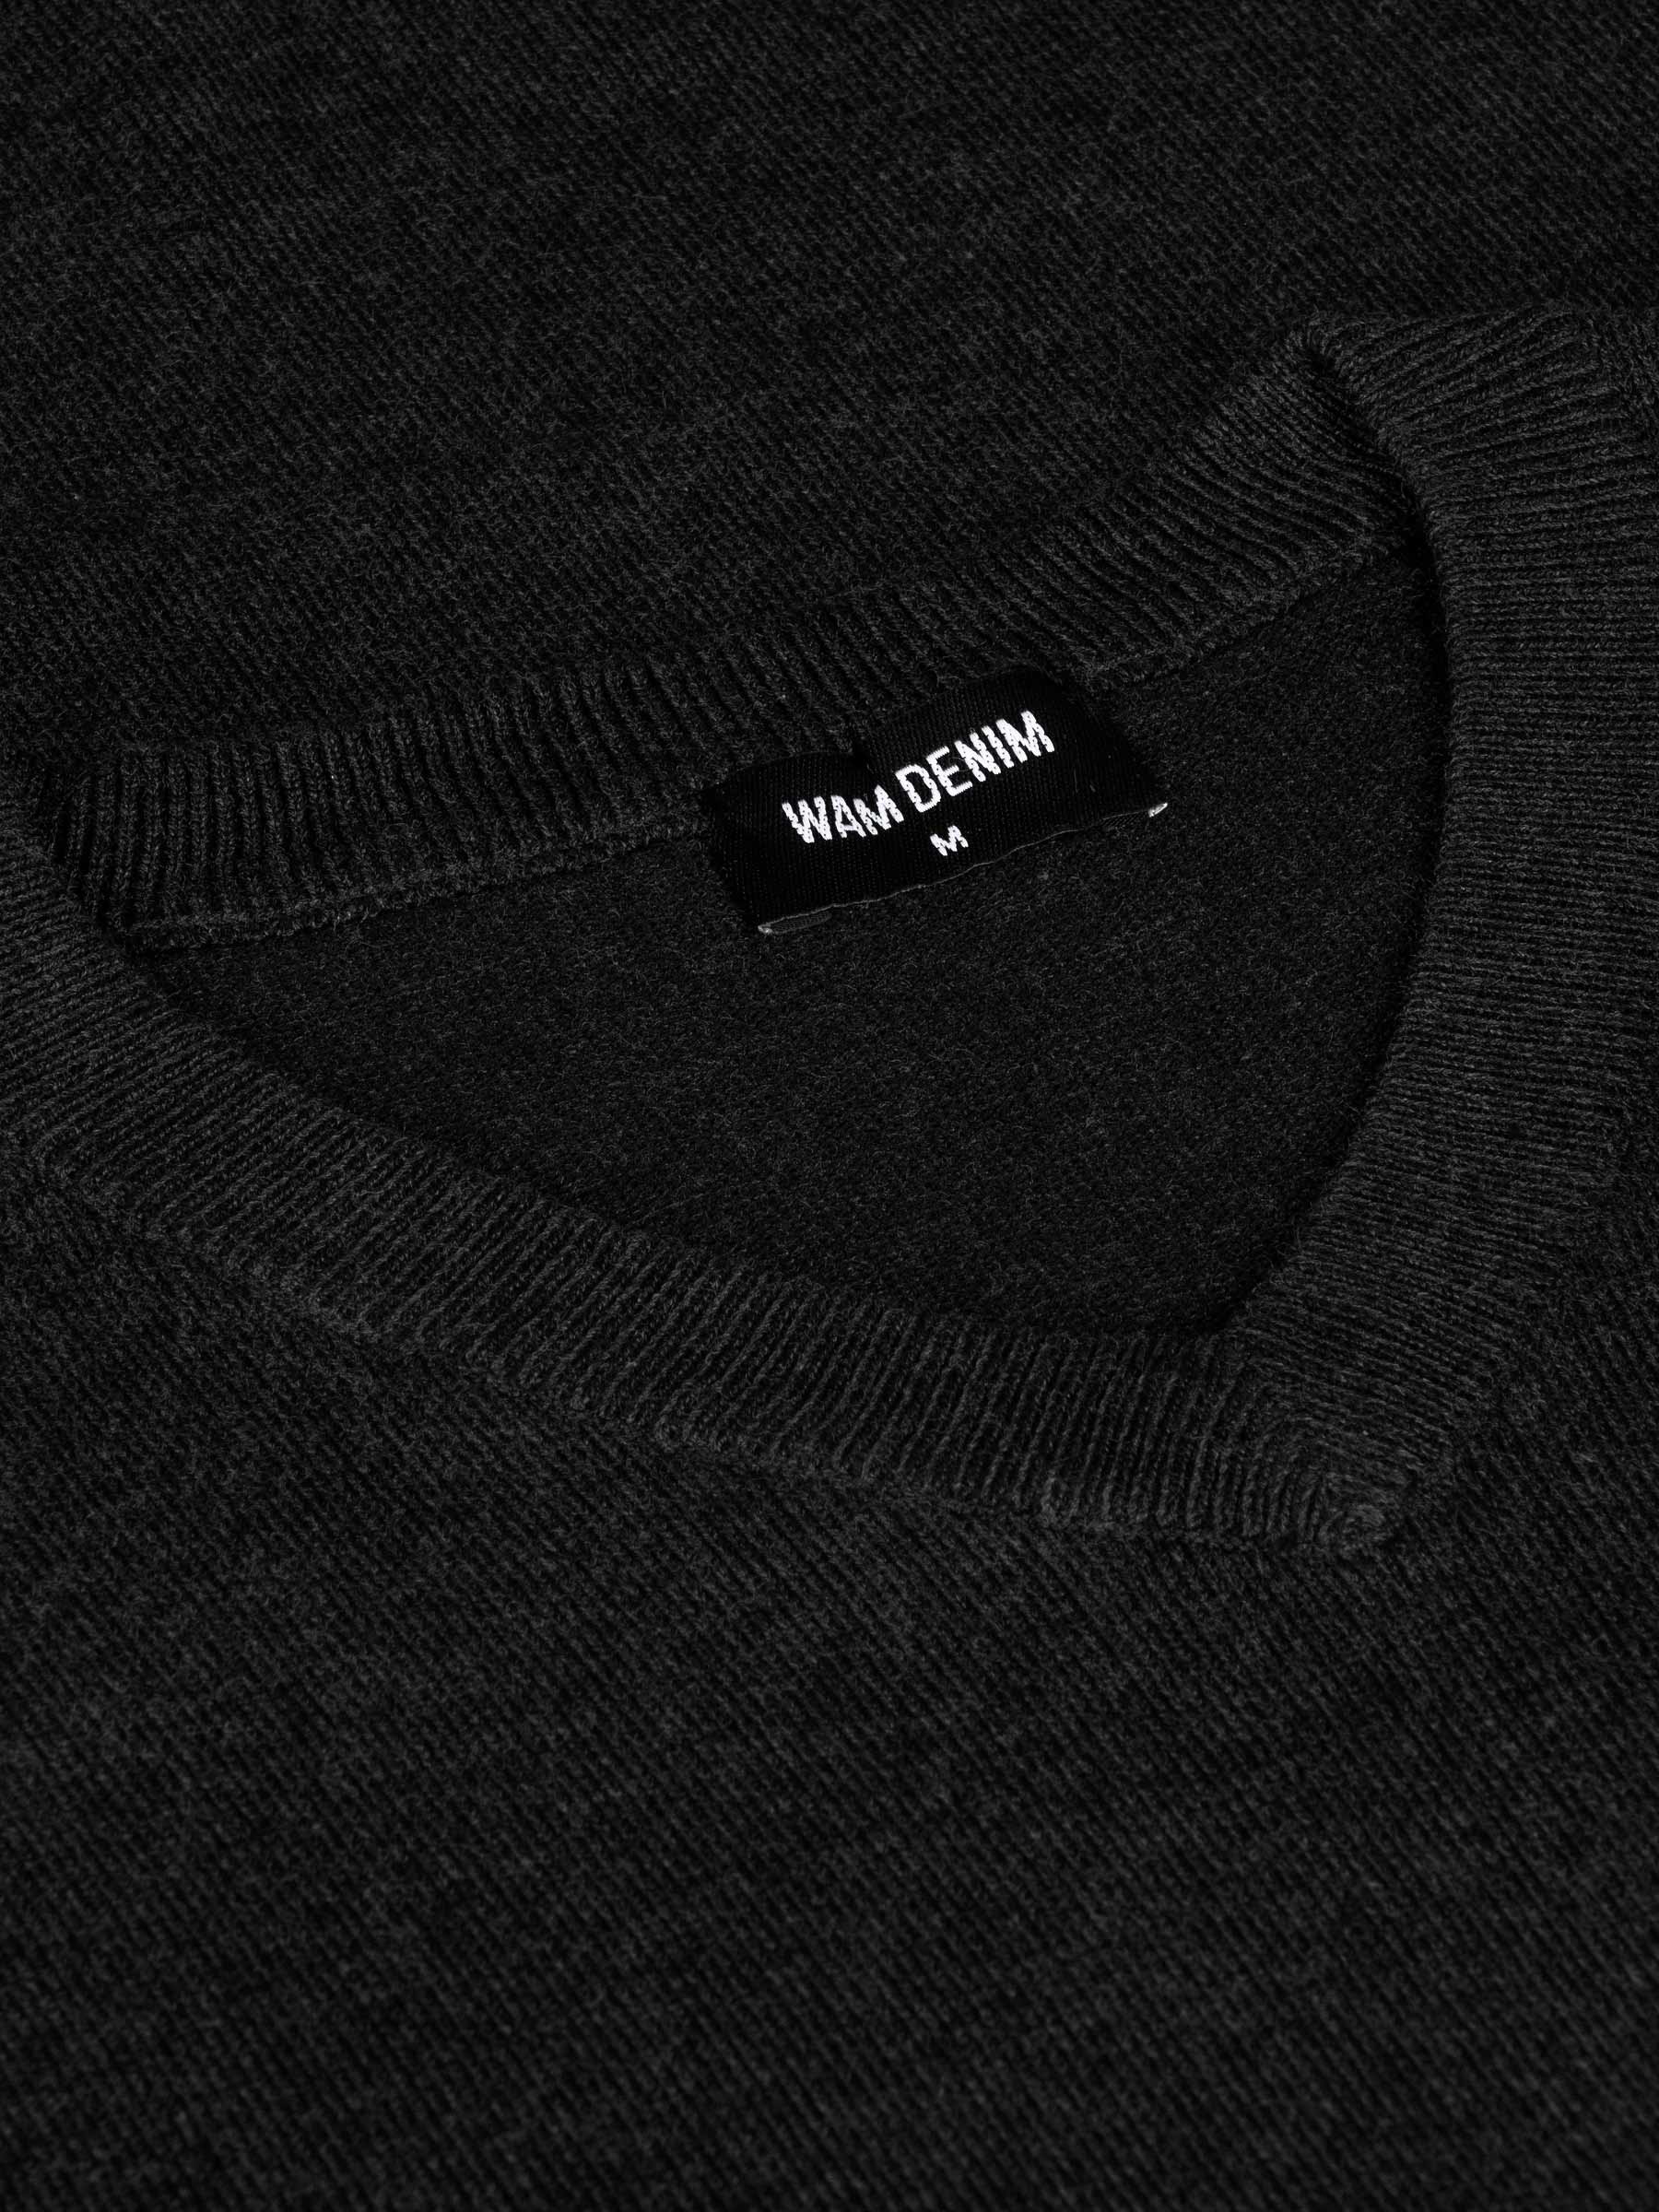 Athens V-Neck Black Sweater